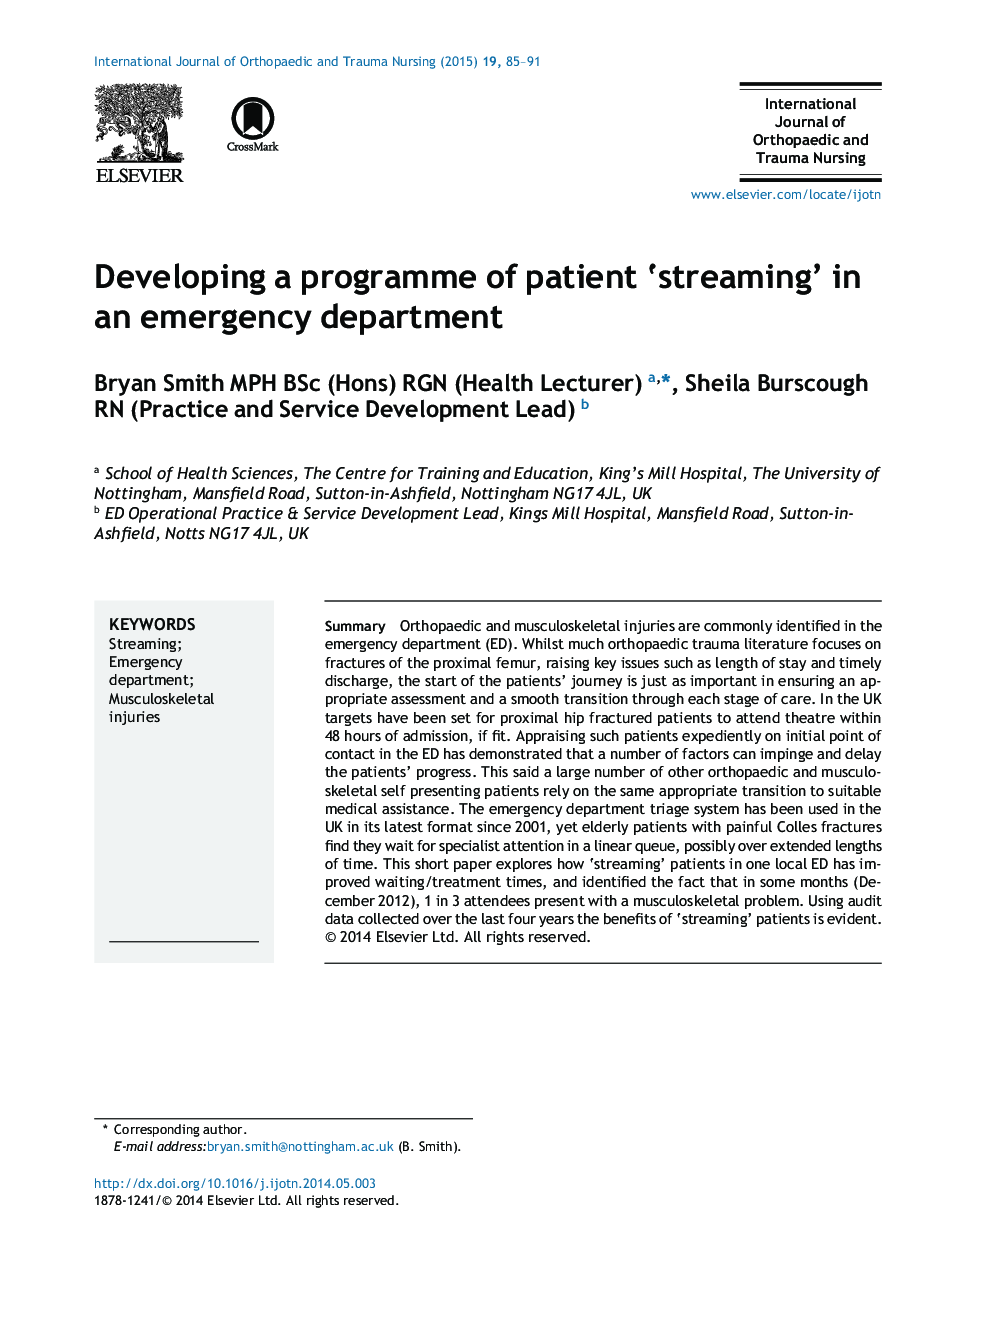 توسعه یک برنامه از 'جریان' بیمار در بخش اورژانس